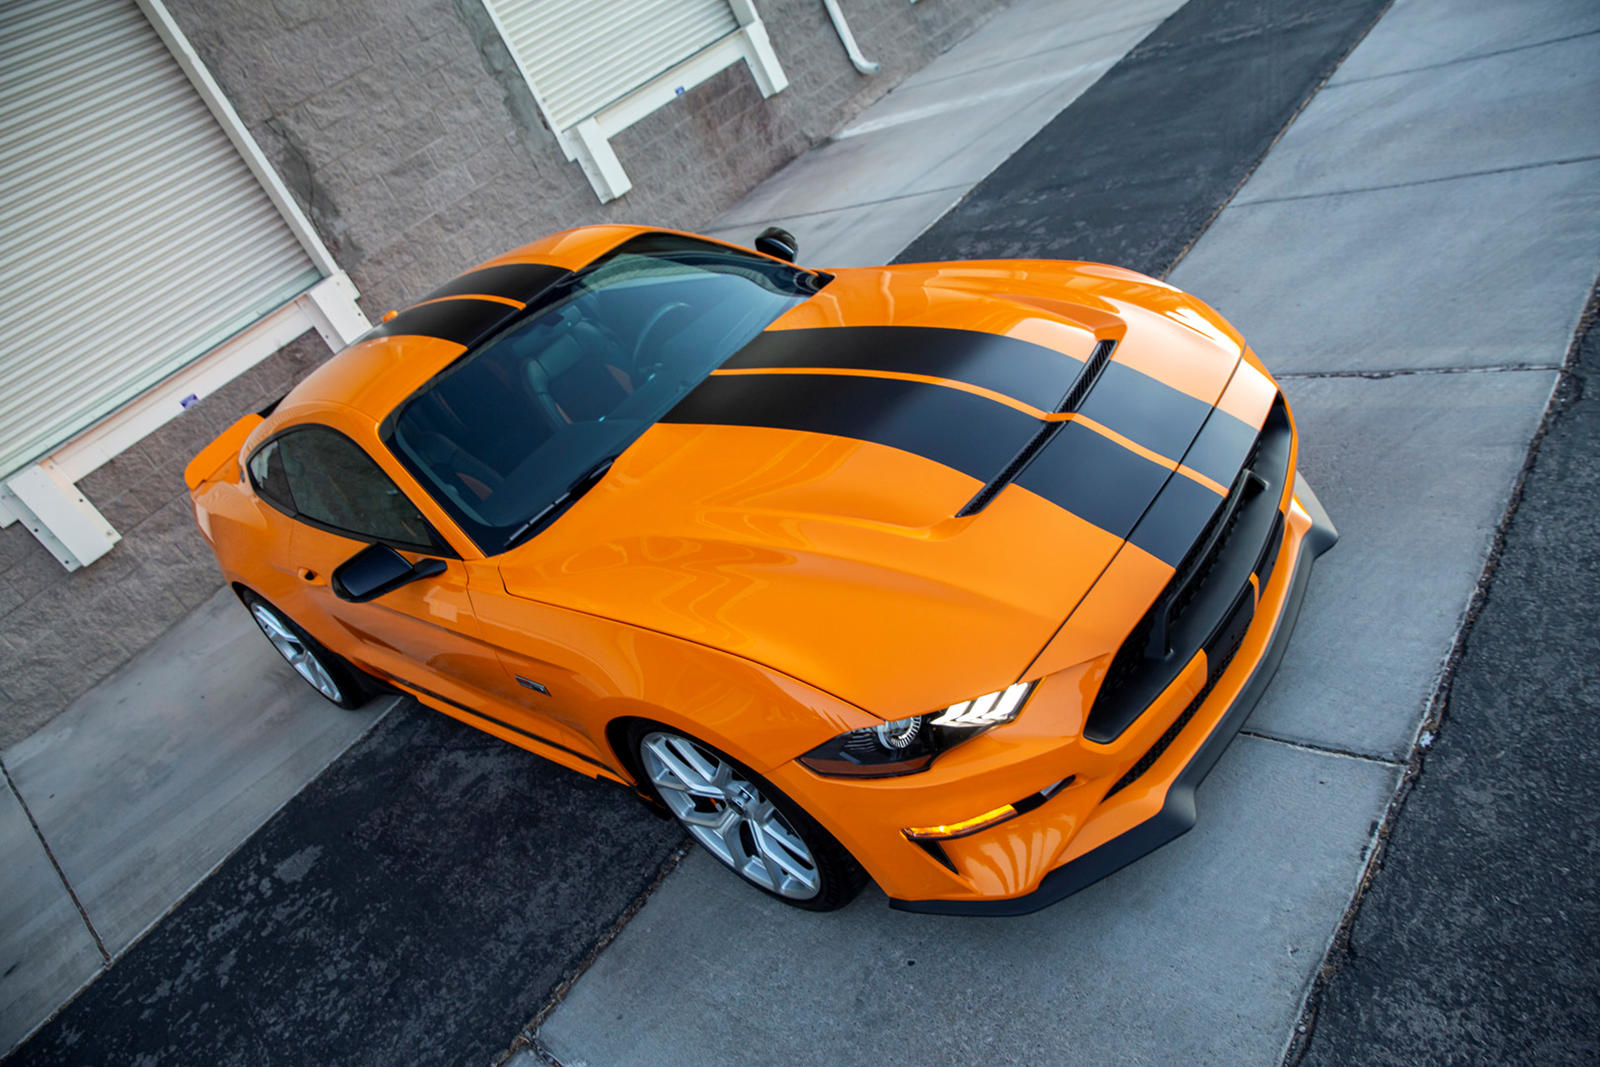 Под капотом 5,0-литровый атмосферный V8 2021 Mustang GT года был доведен до мощности 480 л.с. Если вам все еще недостаточно мощности, Шелби может добавить нагнетатель Ford Performance (за отдельную плату), который увеличивает мощность до 700 л.с. при